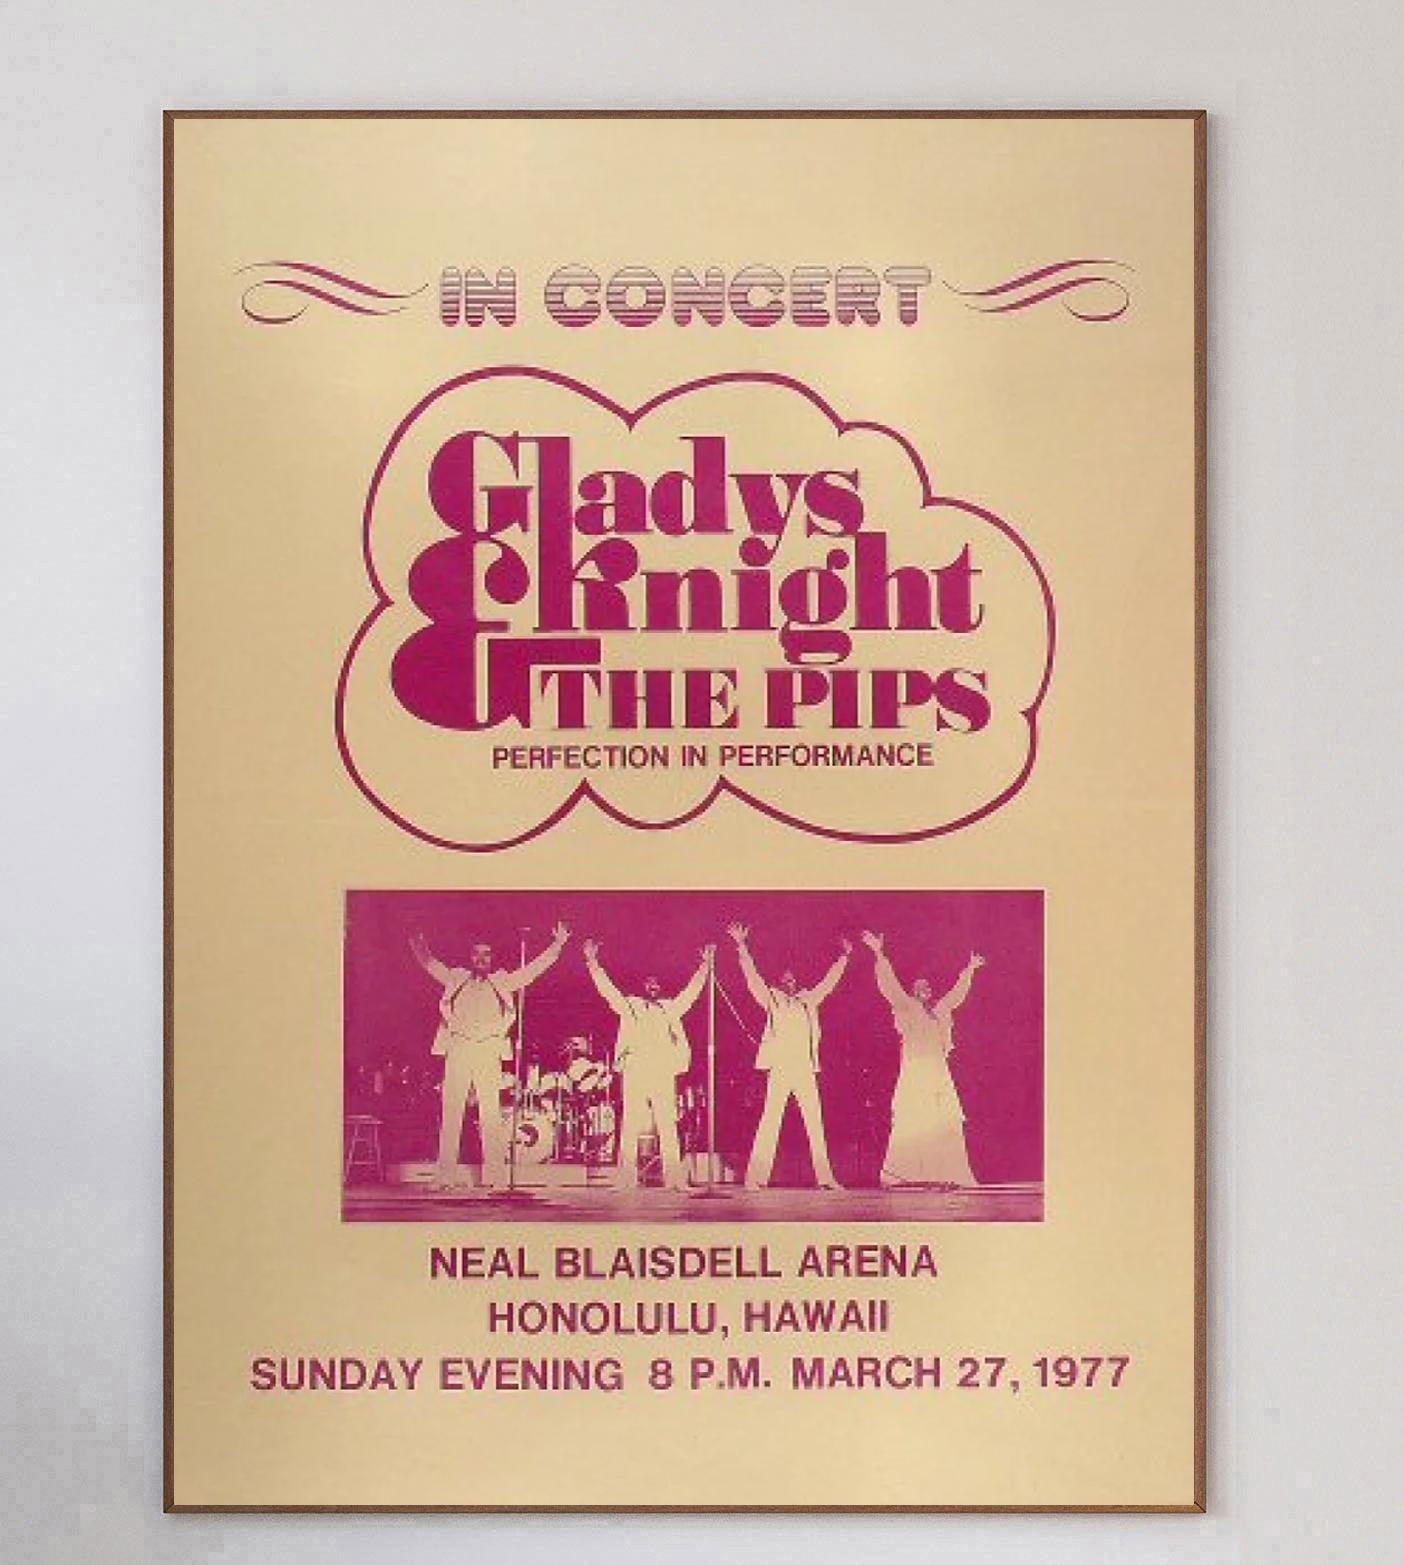 Superbe affiche promouvant le concert de Gladys Knight & the Pips au Neal Blaisdell Arena à Honolulu, Hawaii le 27 mars 1977. Fondés au début des années 1950, Gladys Knight & the Pips ont connu d'innombrables succès tels que 